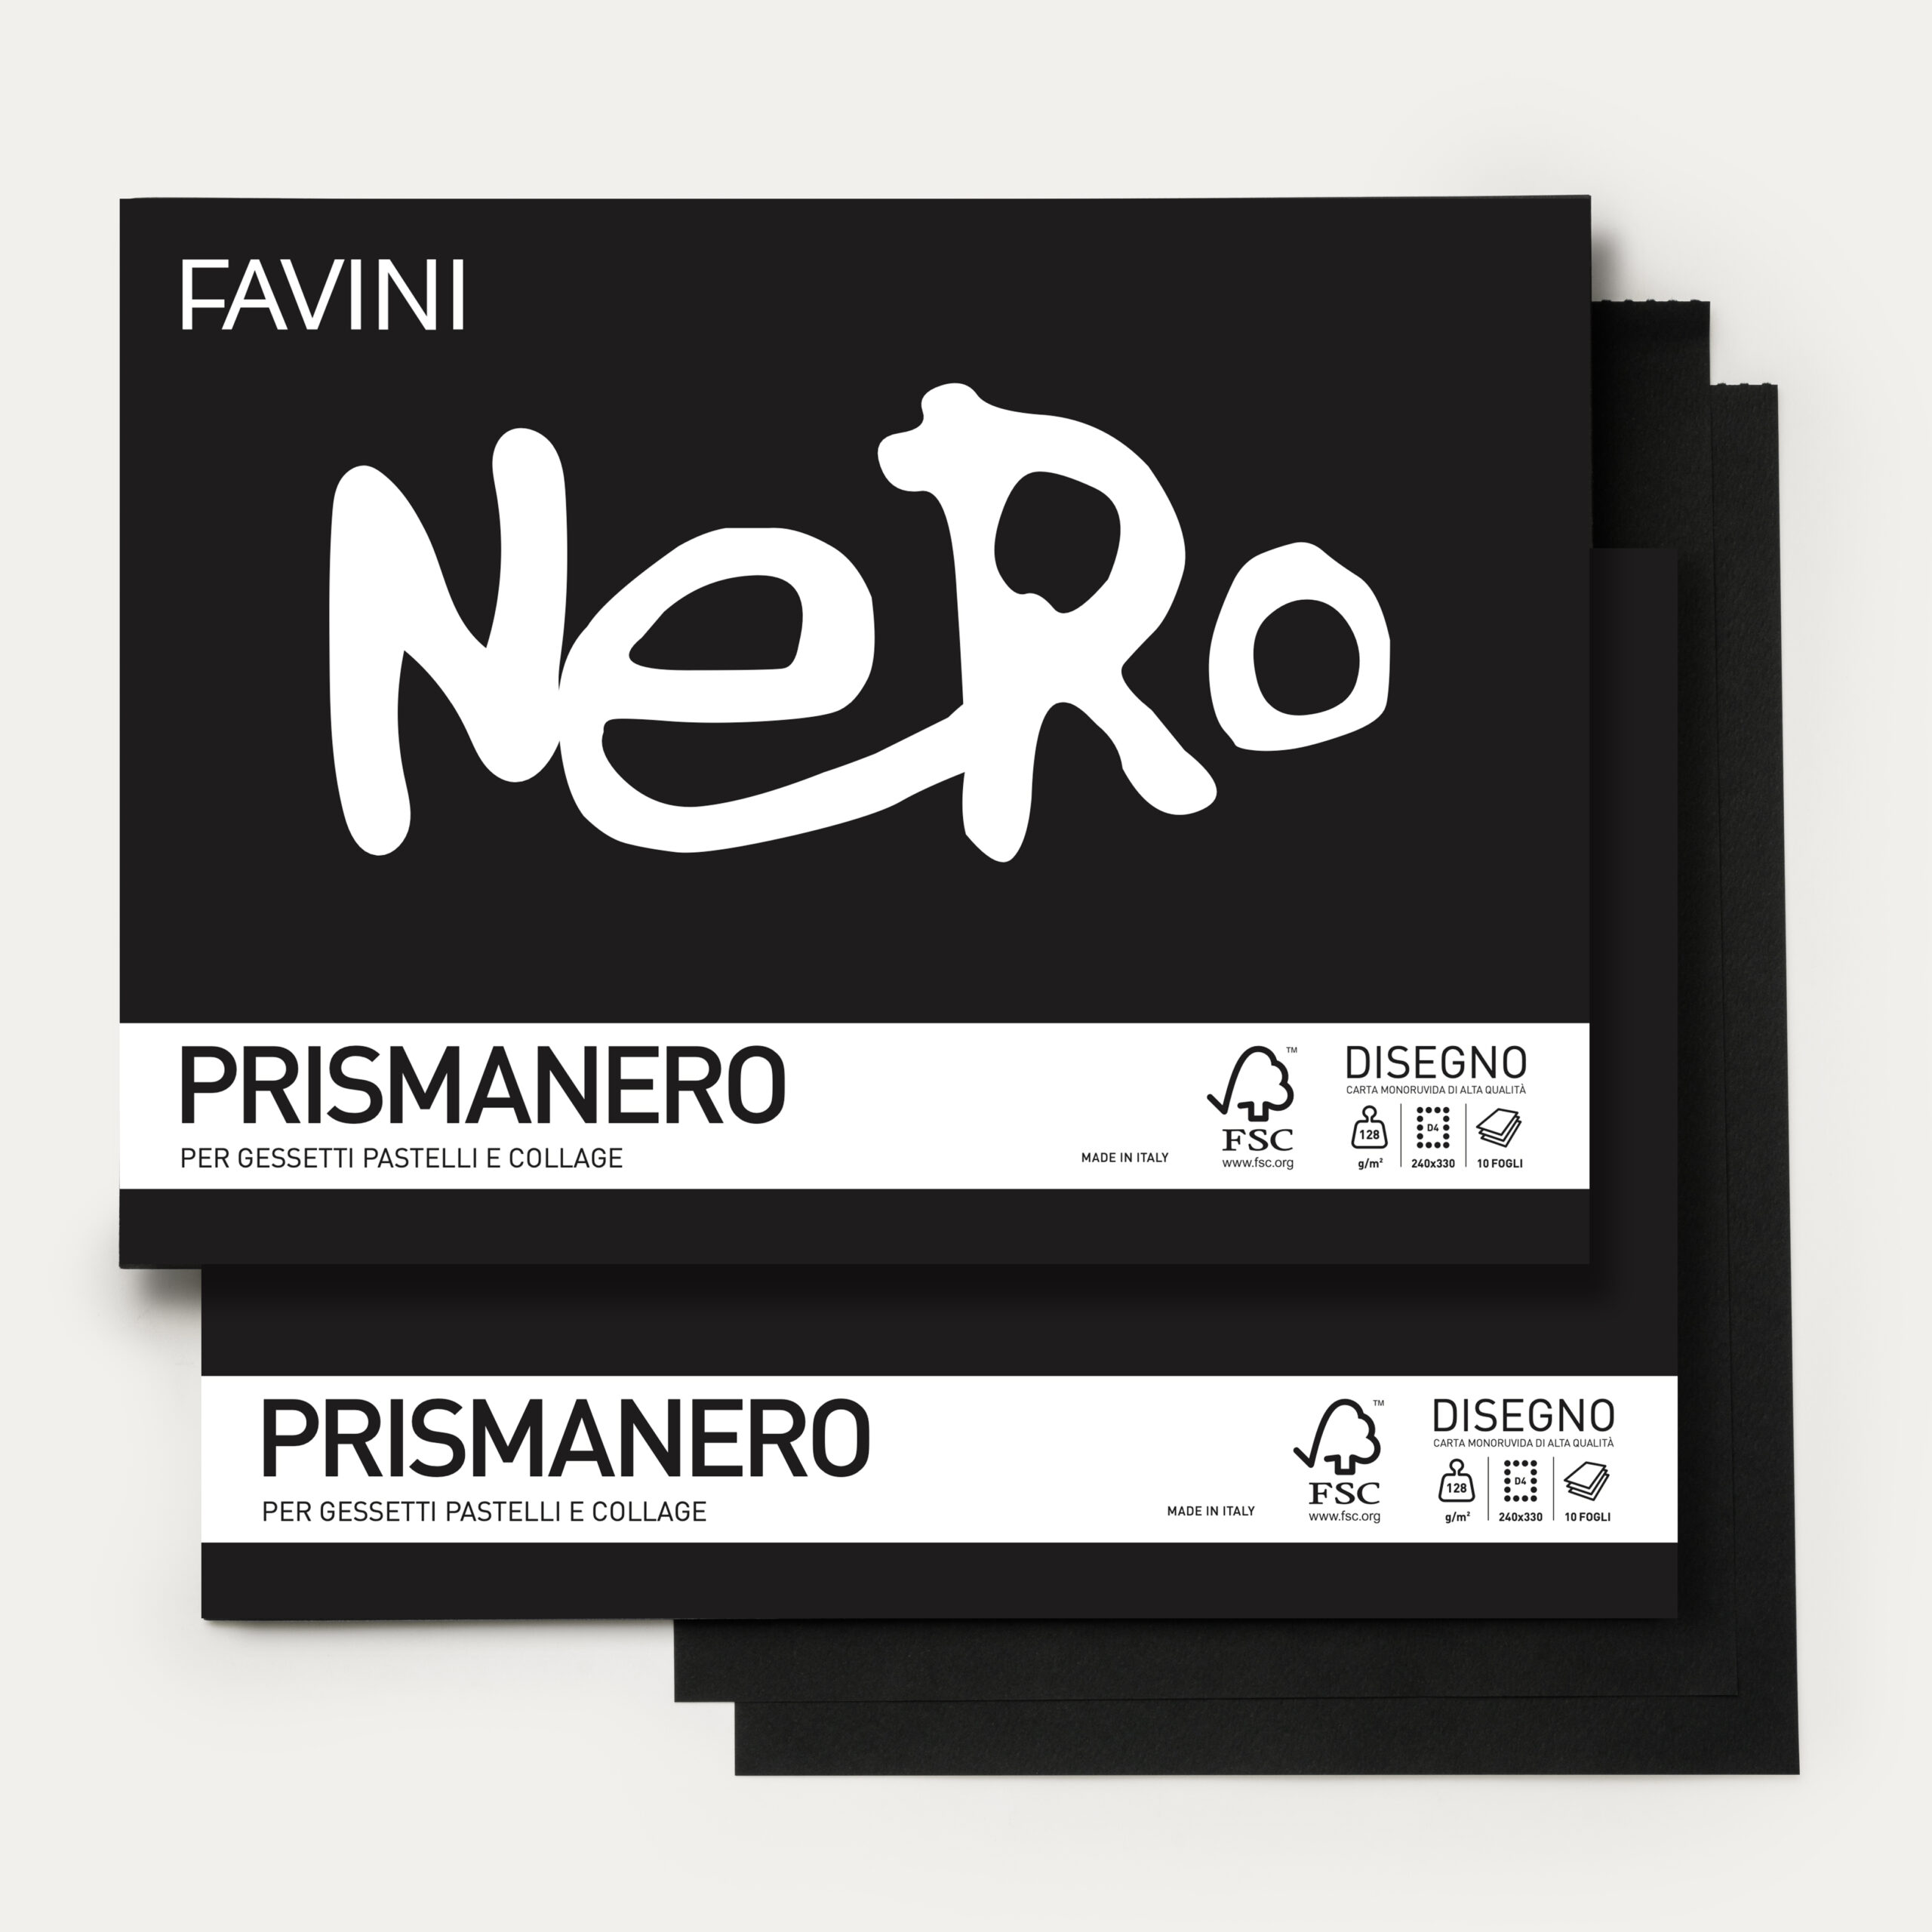 Prismanero - Cartotecnica Favini